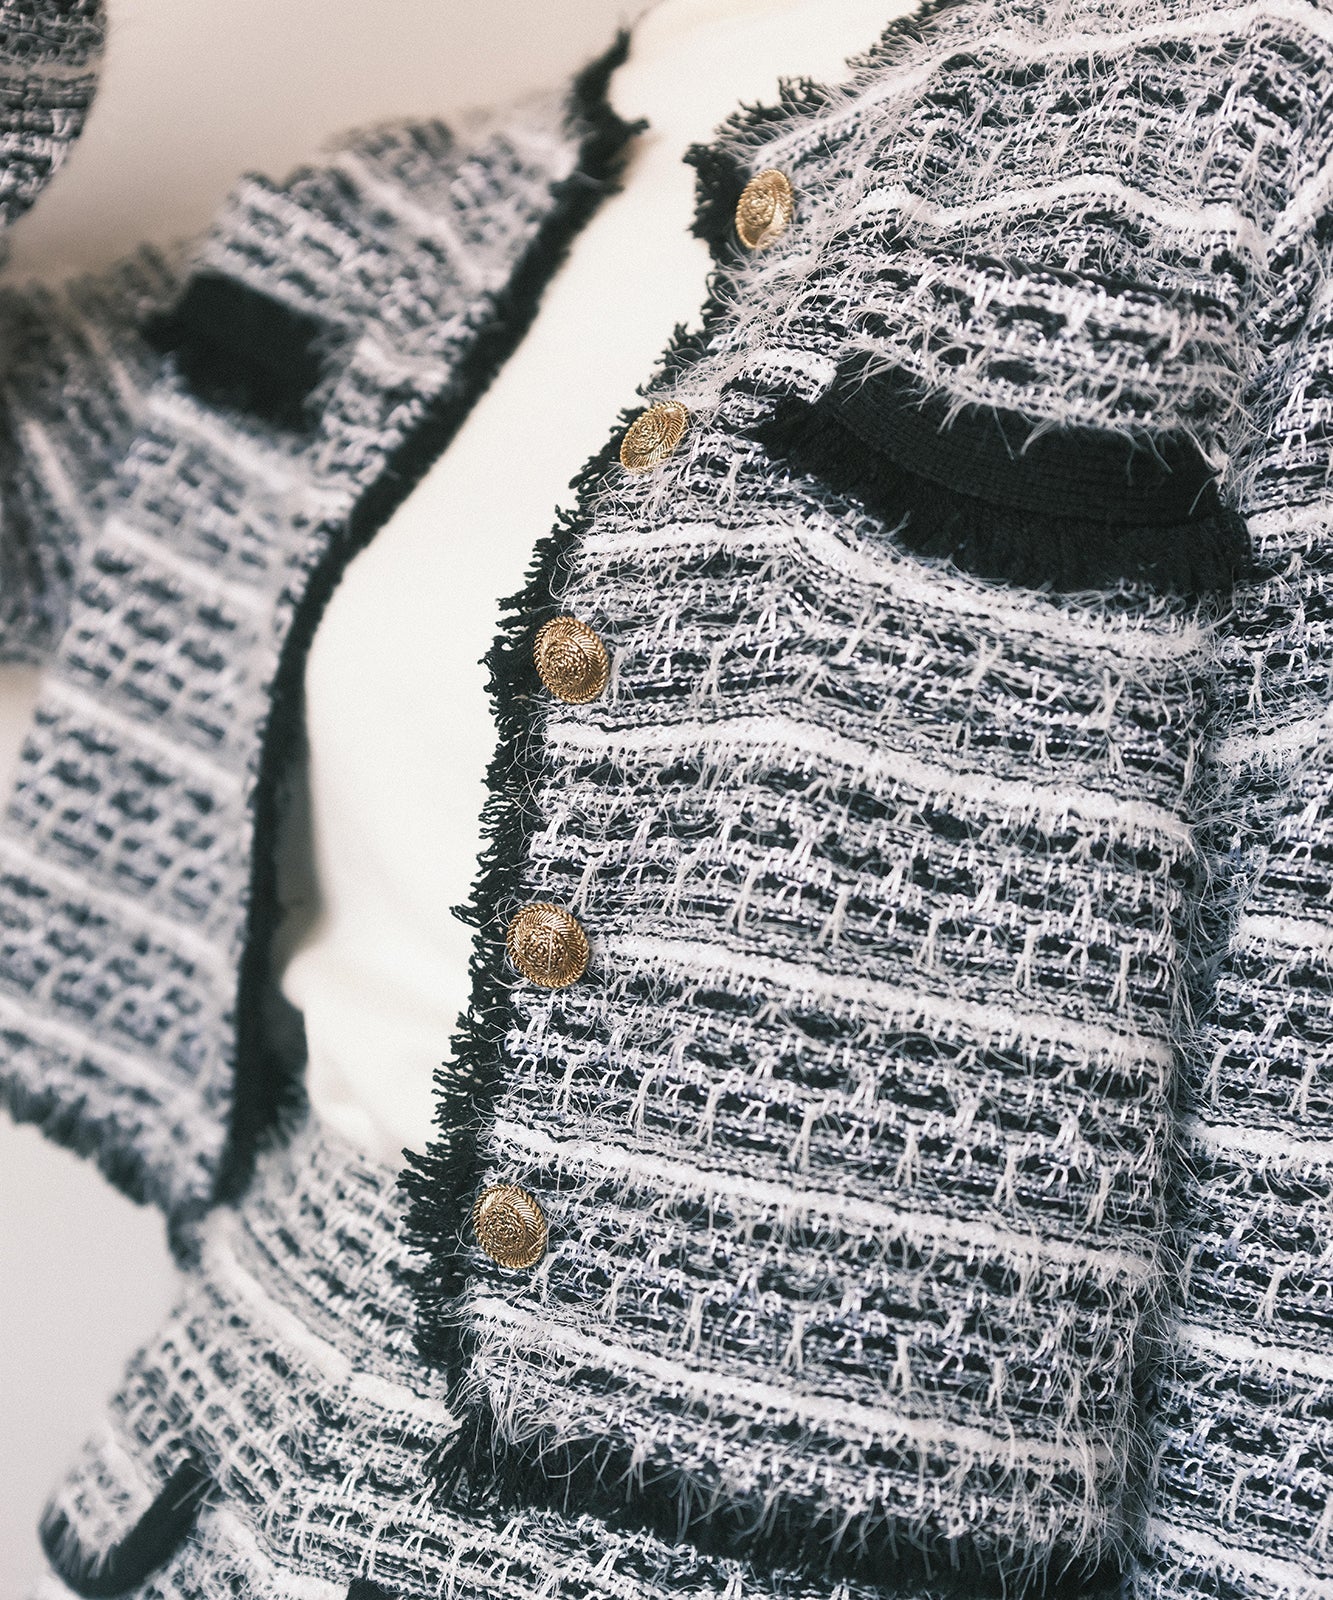 ≪在庫販売≫knit tweed no collar jacket（ニットツイードノーカラー